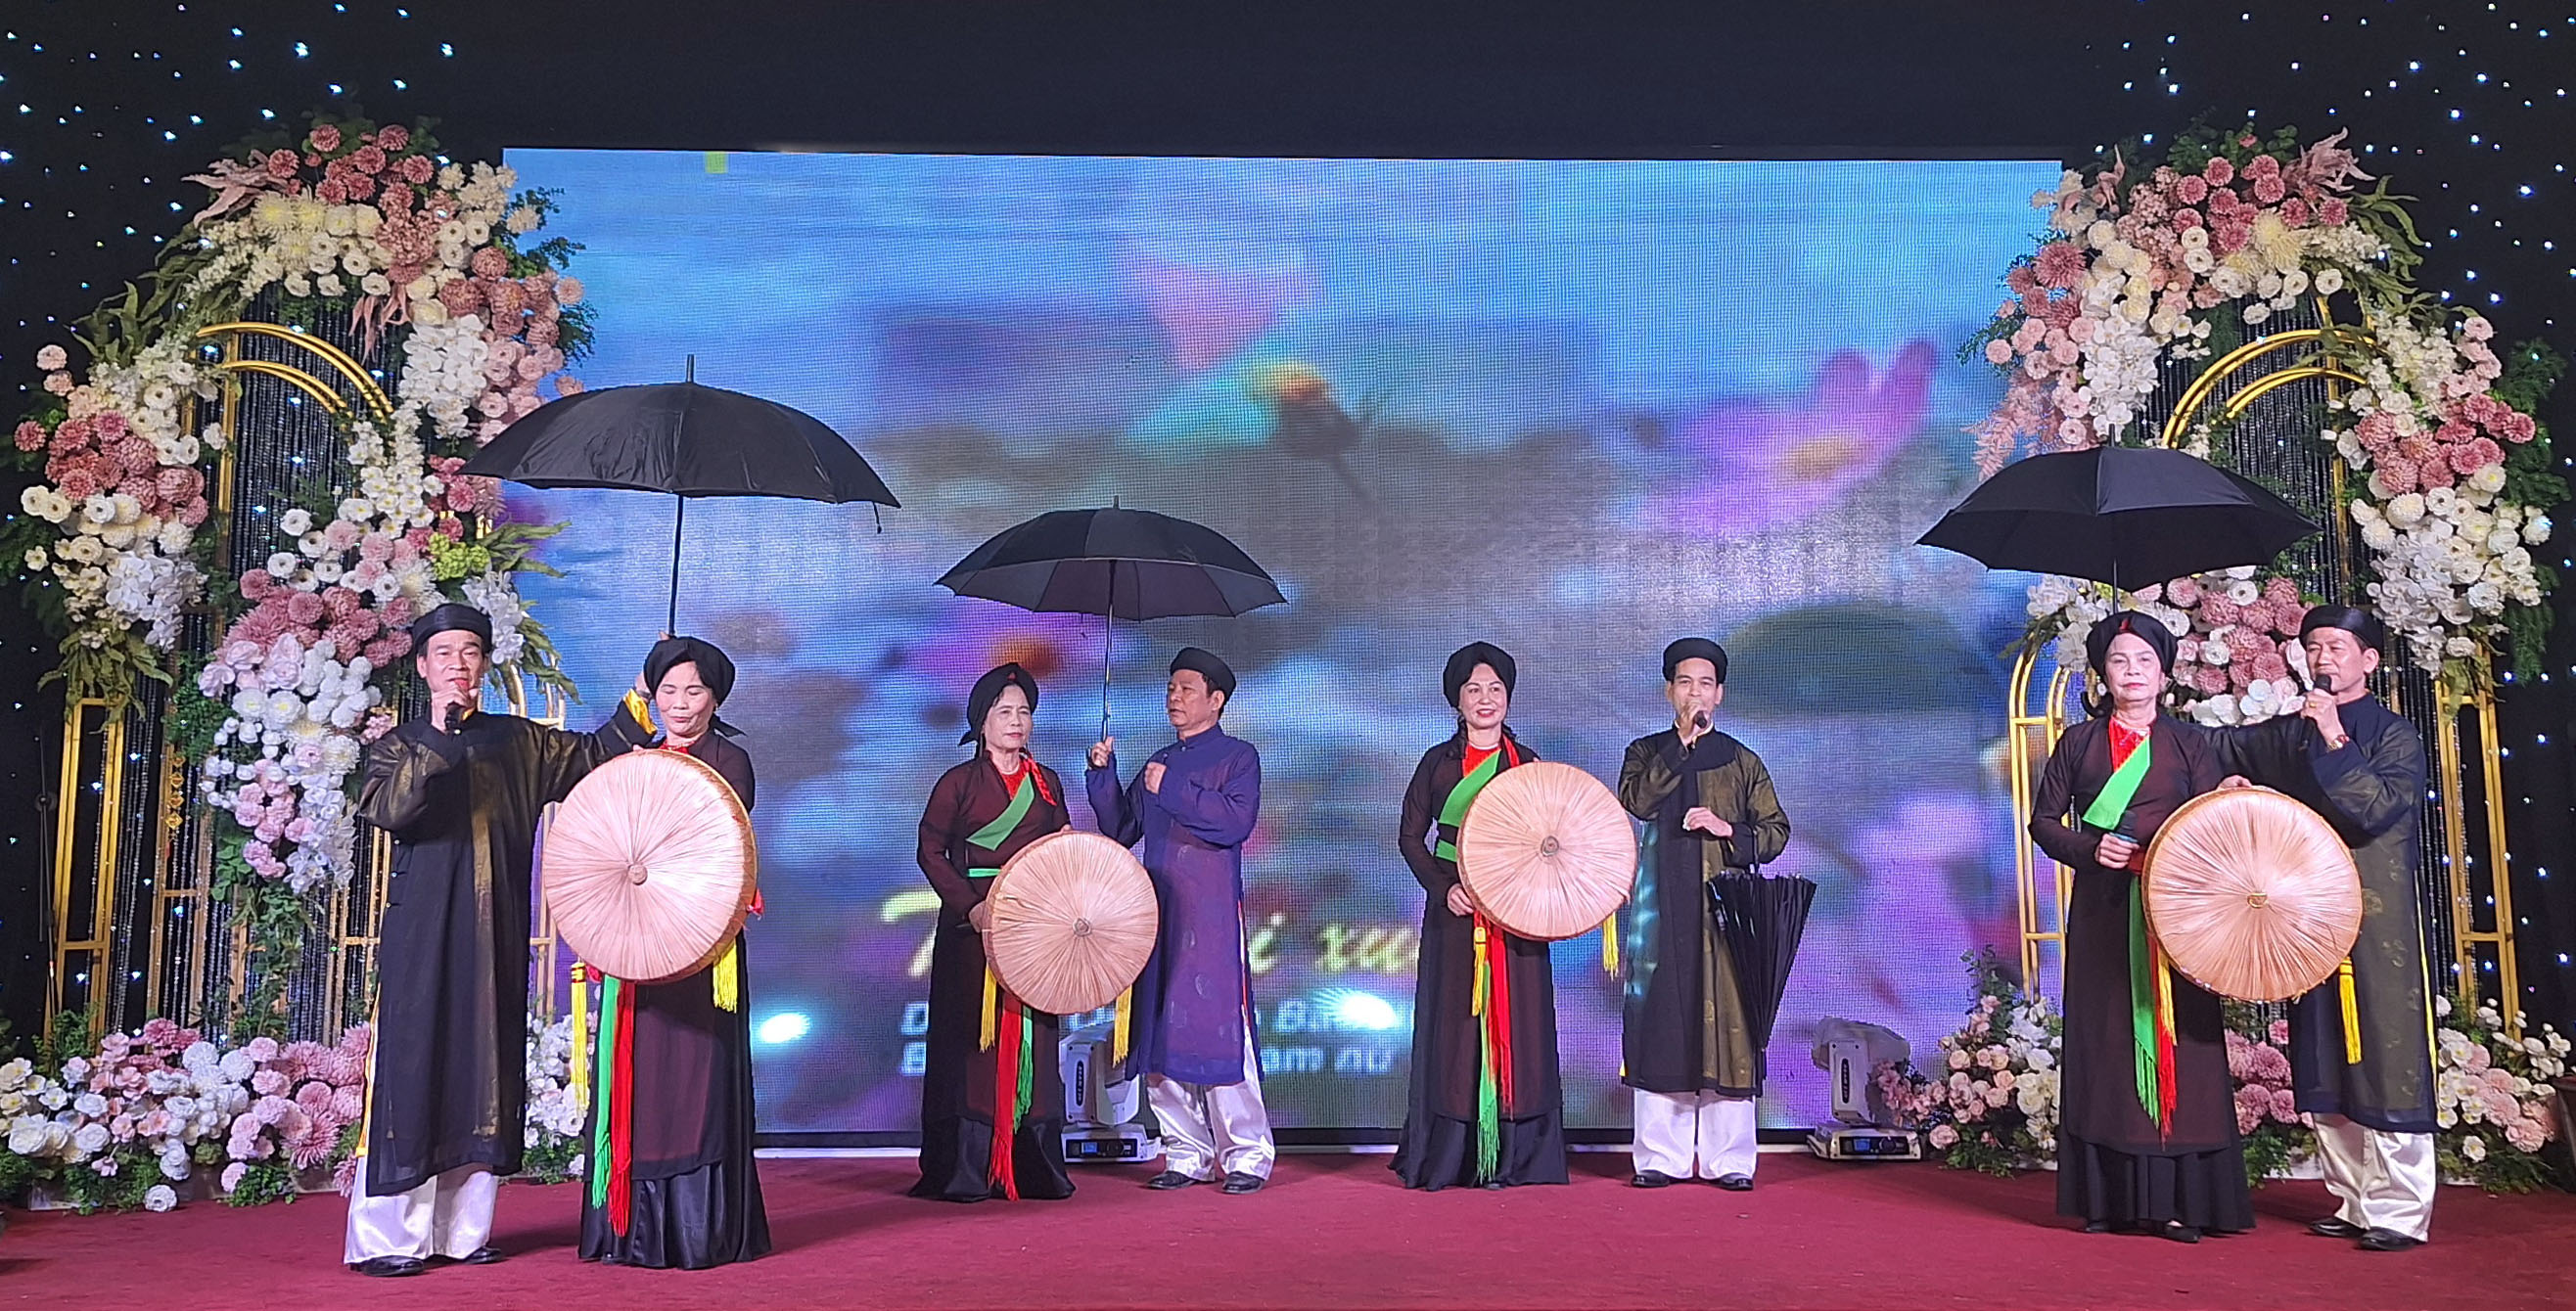 Ca khúc: Trảy hội xuân. biểu diễn: Câu lạc ho sư đoàn 470 tỉnh Bắc Ninh